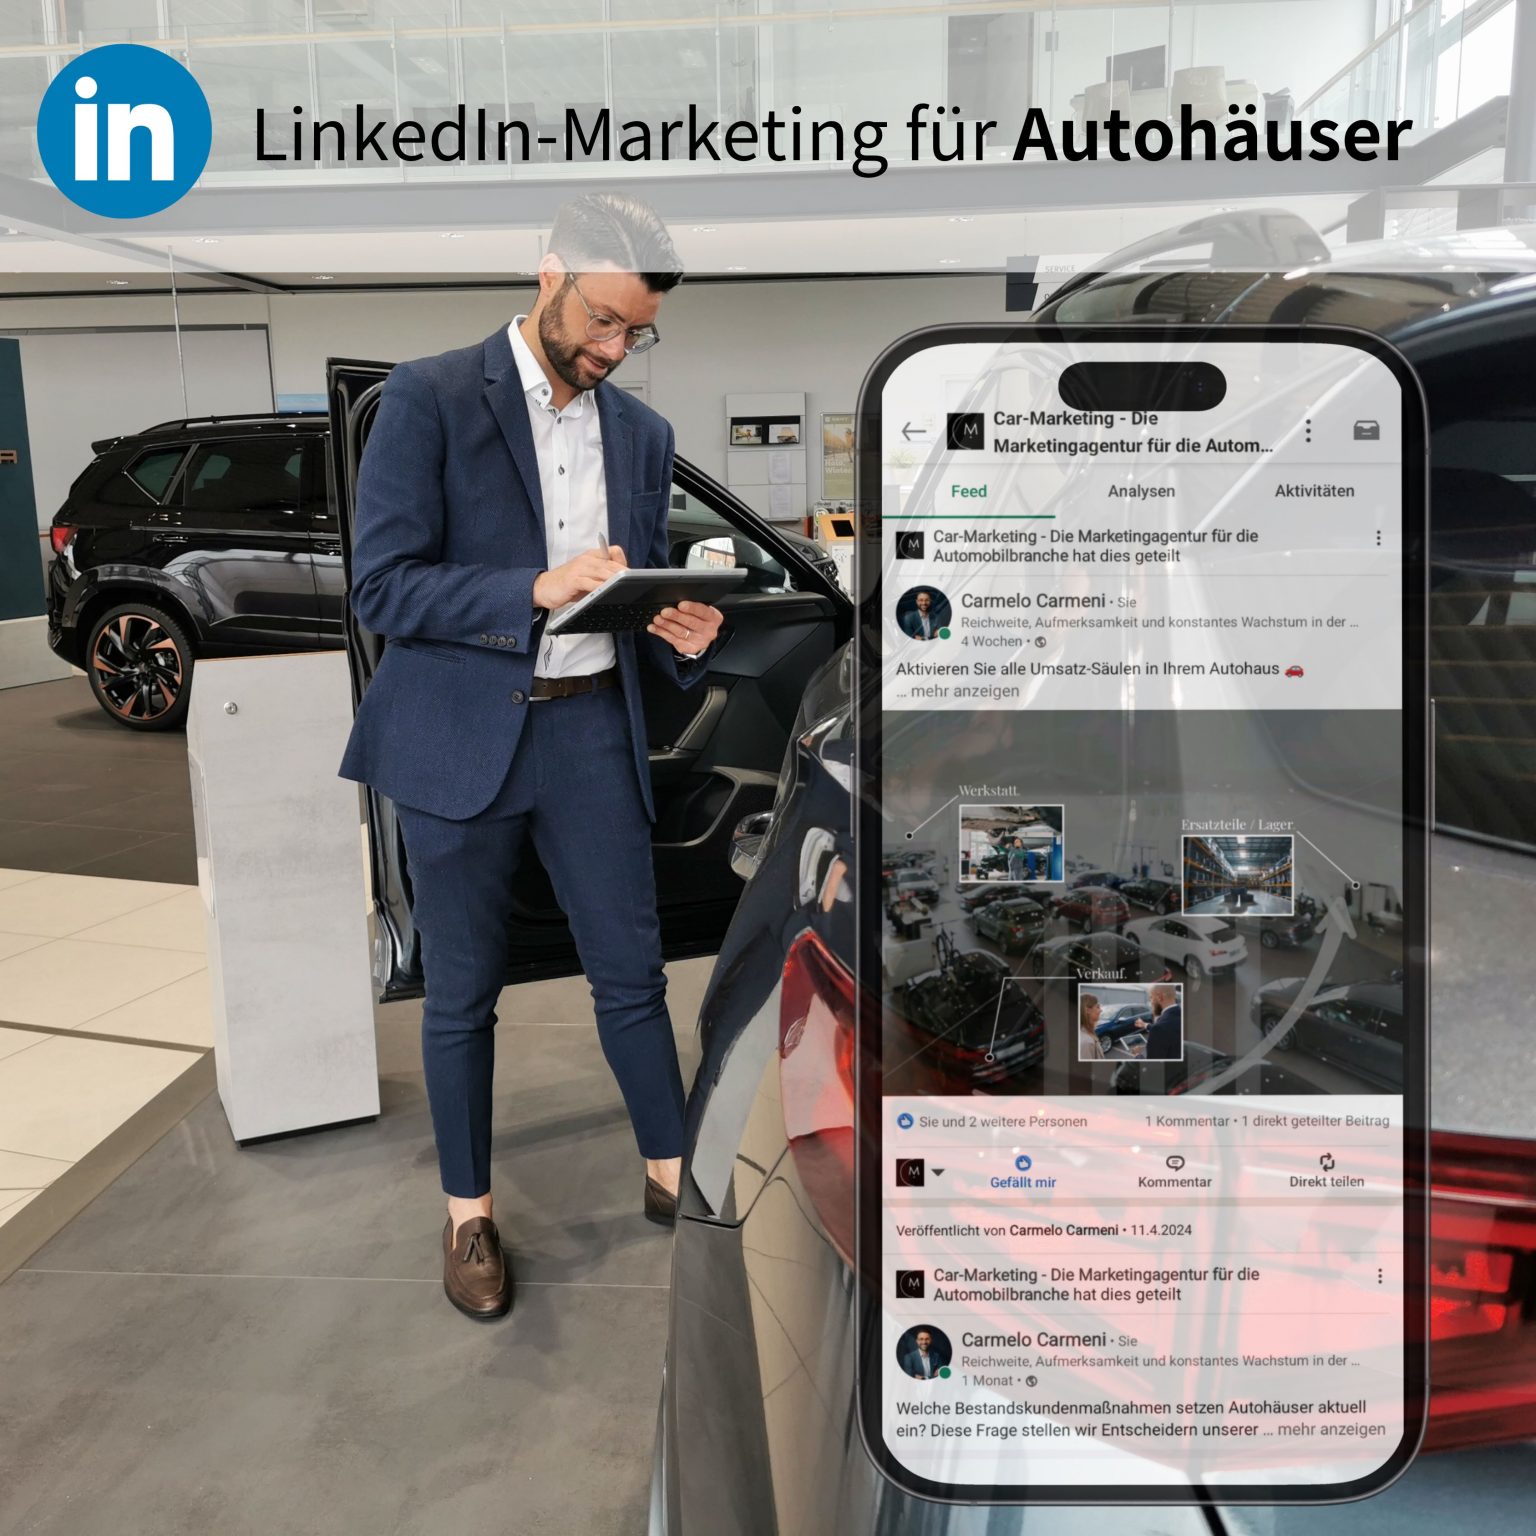 LinkedIn-Marketing für Autohäuser